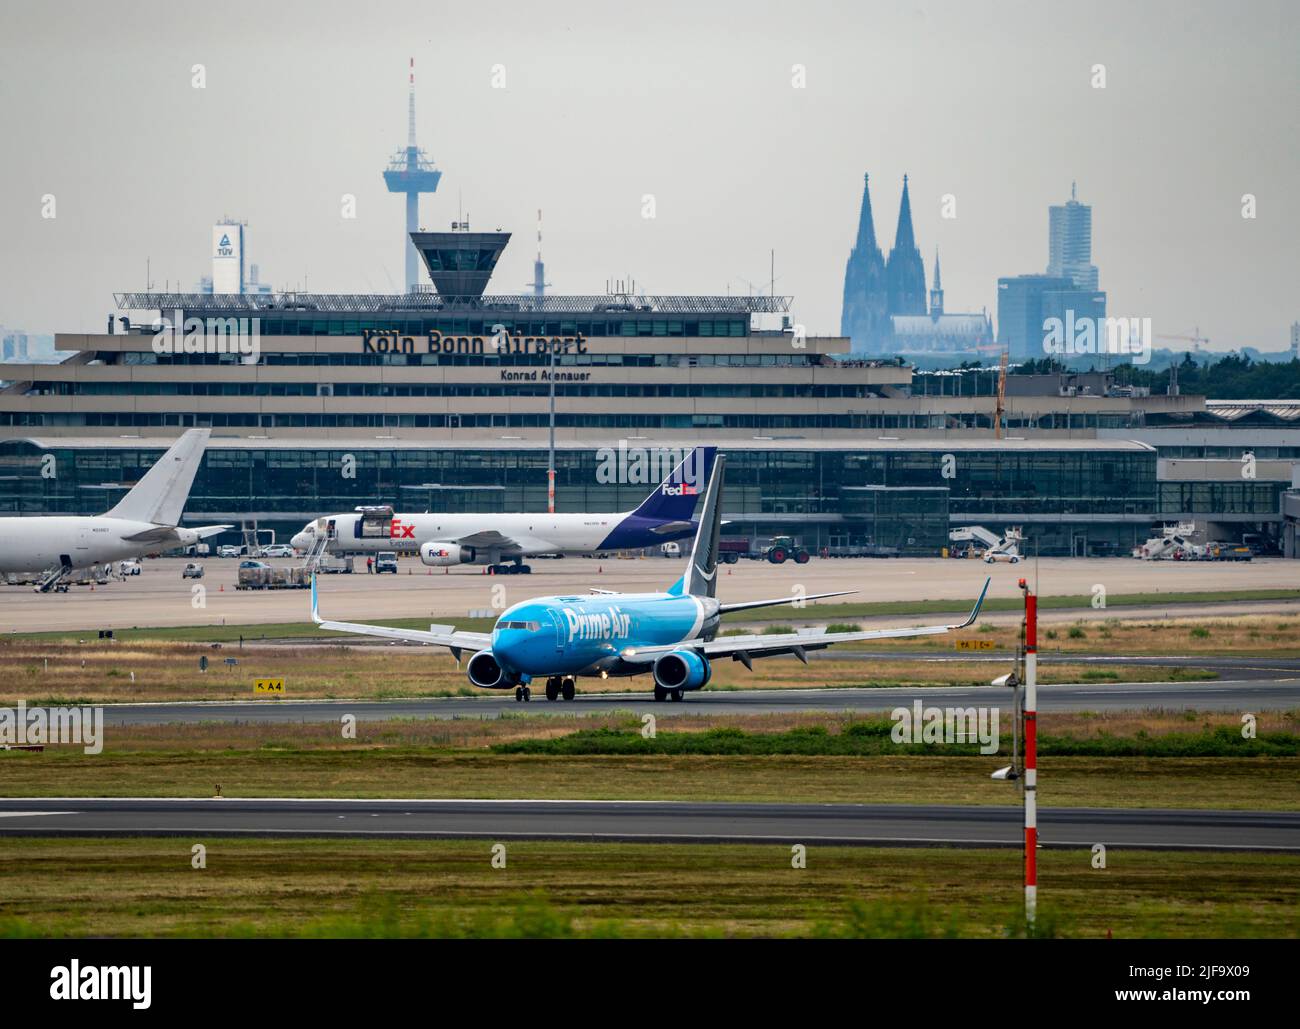 Aeroporto di Colonia-Bonn, CGN, Amazon prime Air Boeing 737 dopo l'atterraggio, torre tedesca di controllo del traffico aereo, edificio del terminal, Cattedrale di Colonia, Colonia, Foto Stock